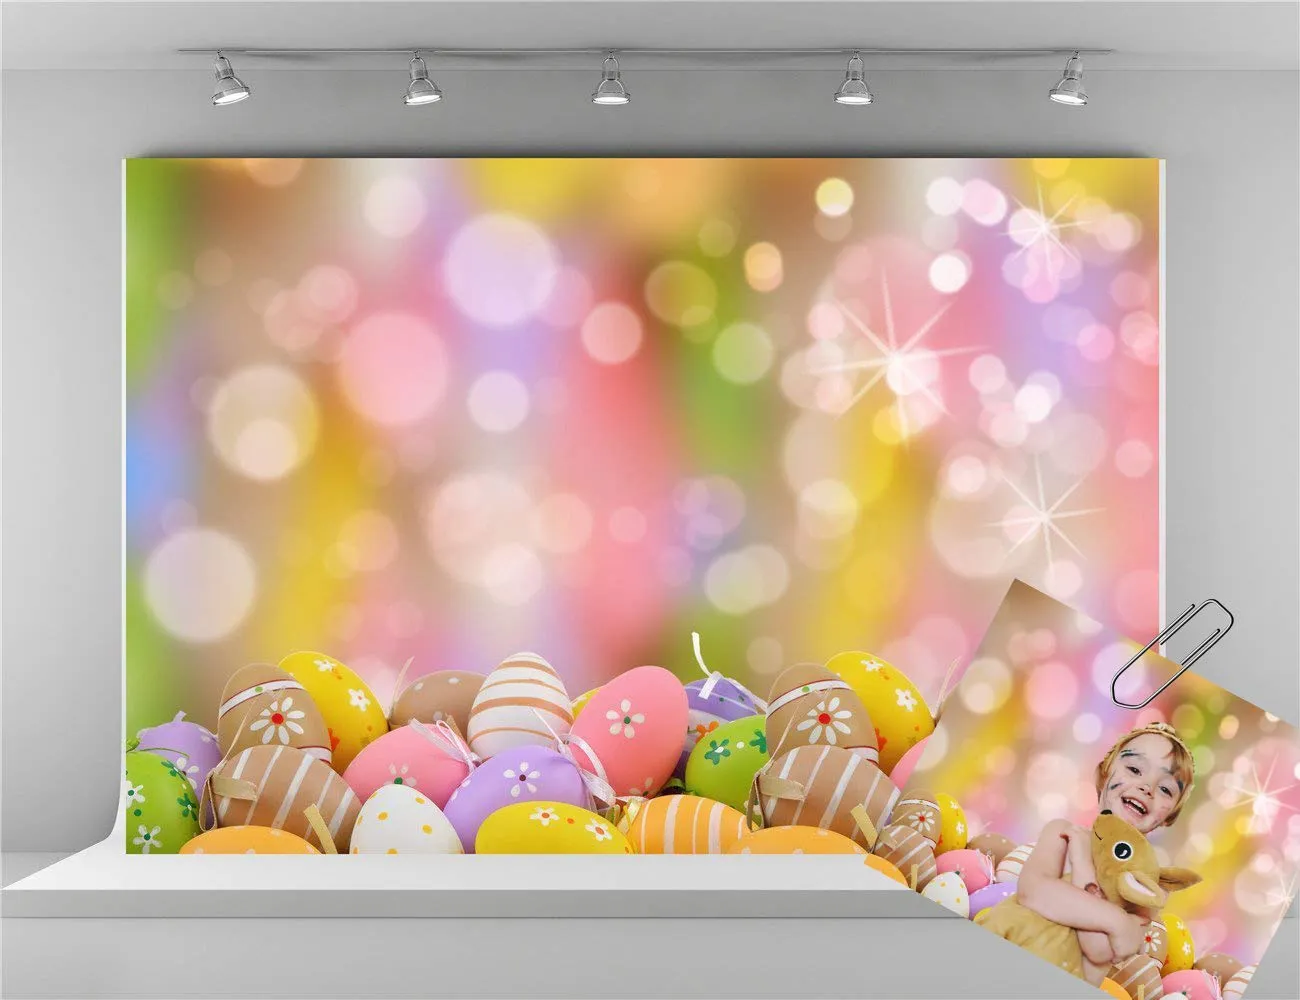 케이트 디지털 인쇄 부활절 배경 다채로운 계란 사진 배경 부활절 파티 사진 스튜디오 촬영을위한 배경